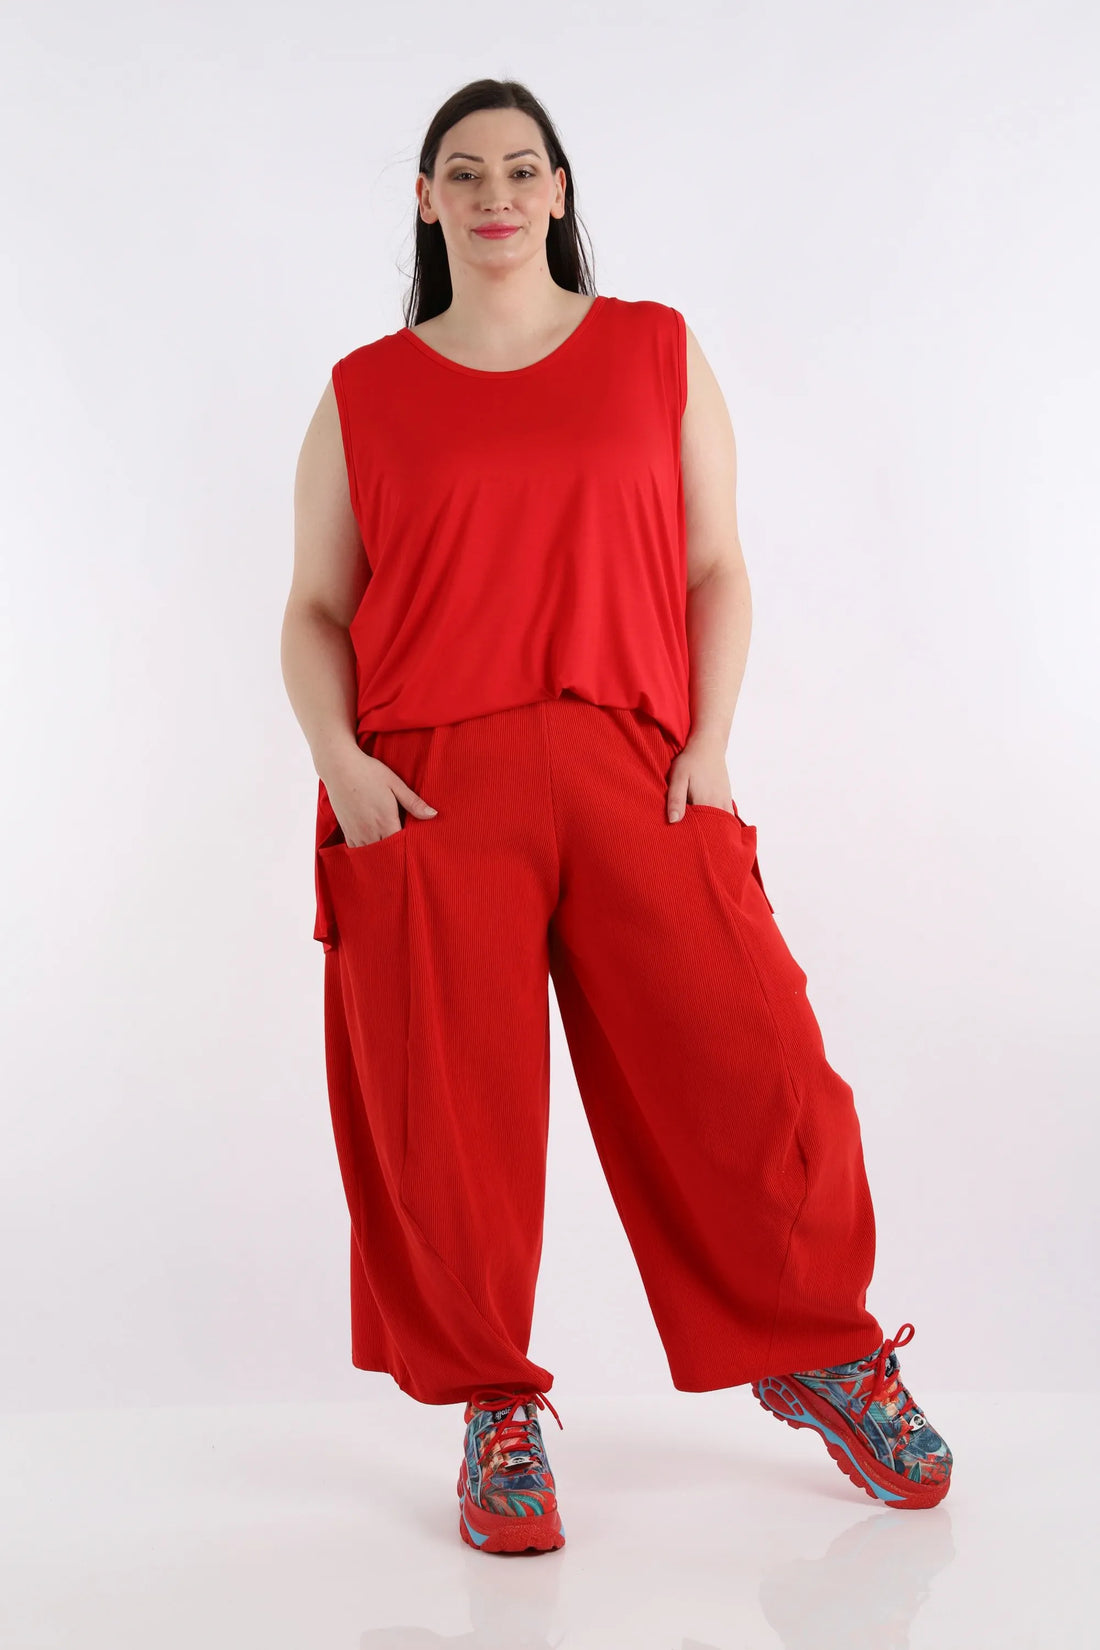 Ballonhose von AKH Fashion aus Baumwolle, 1252.08069, Rot, Unifarben, Ausgefallen, Modern